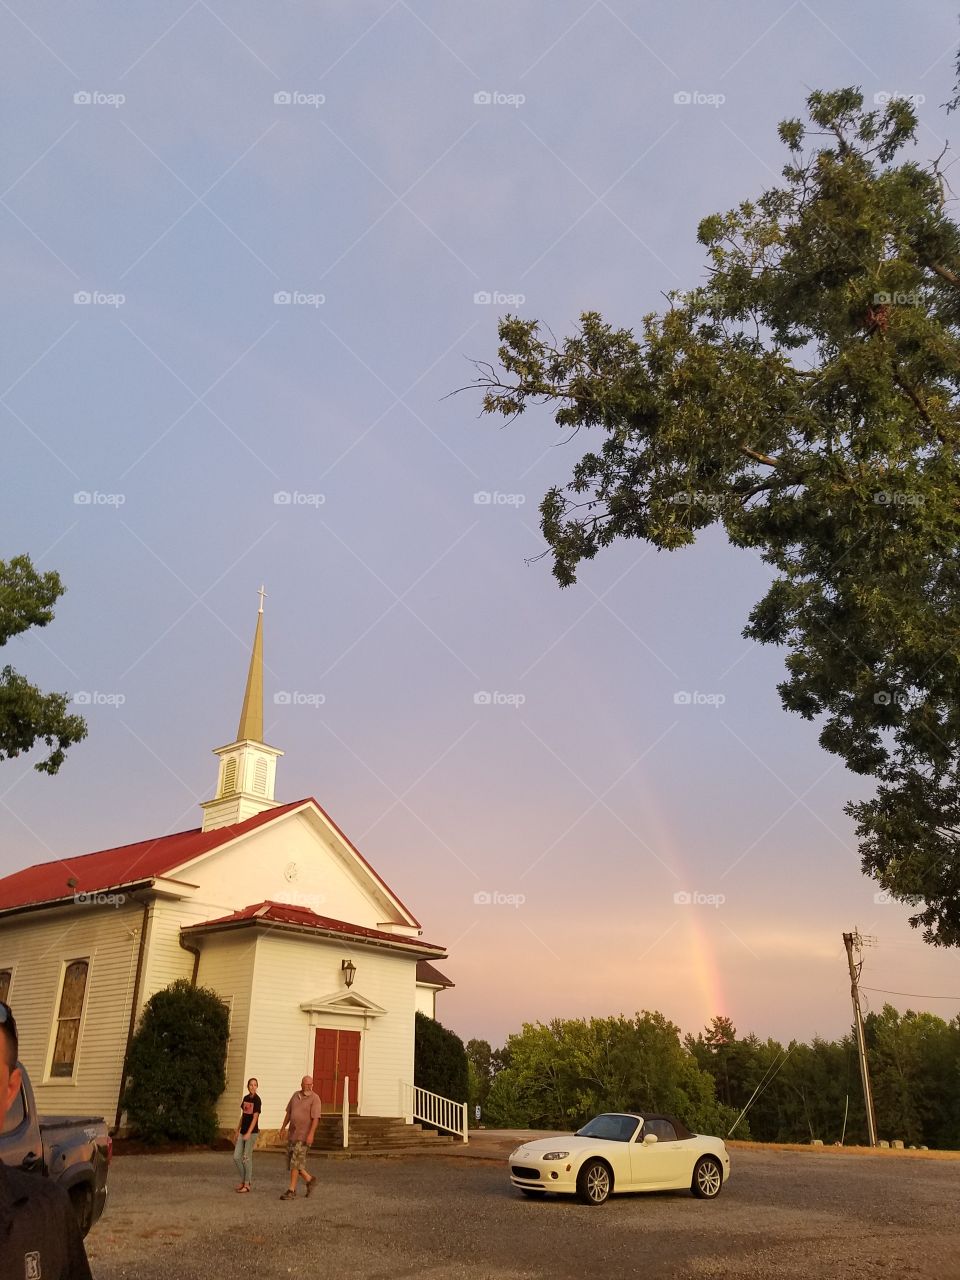 Rainbow over country church 